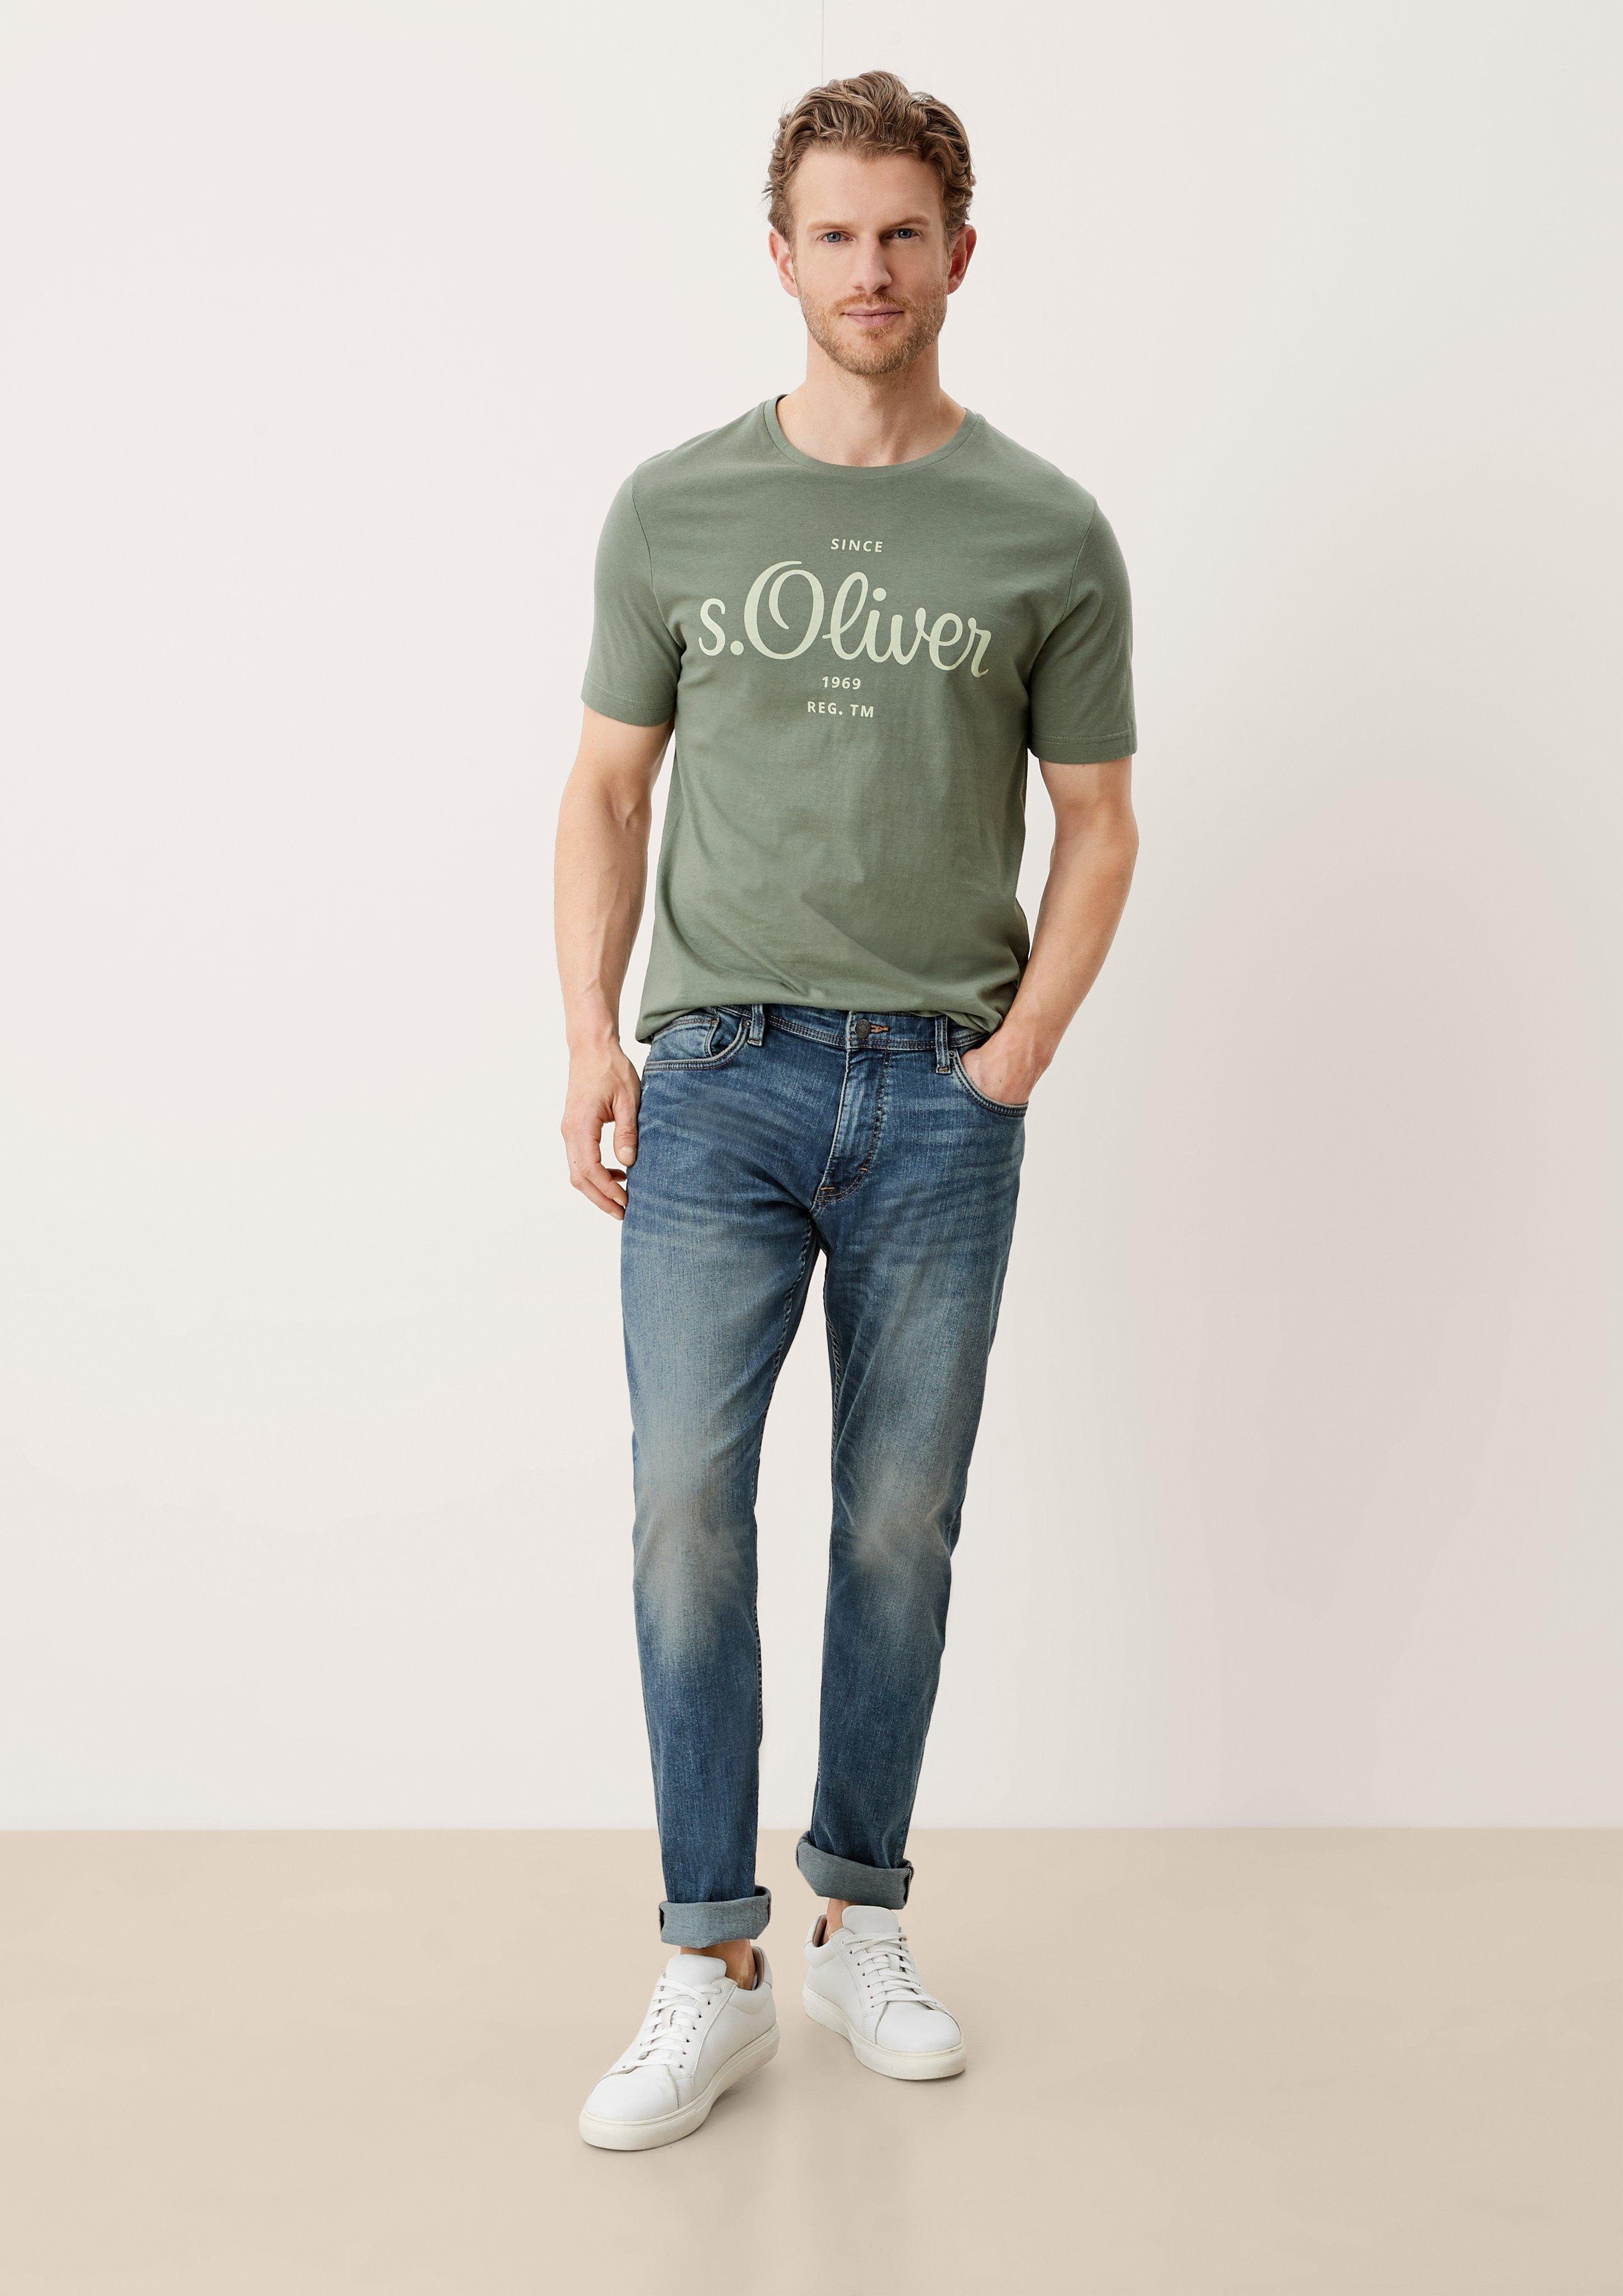 s.Oliver 5-Pocket-Jeans Jeans Keith / Slim Fit / Mid Rise / Slim Leg Destroyes, Waschung light blue sretche